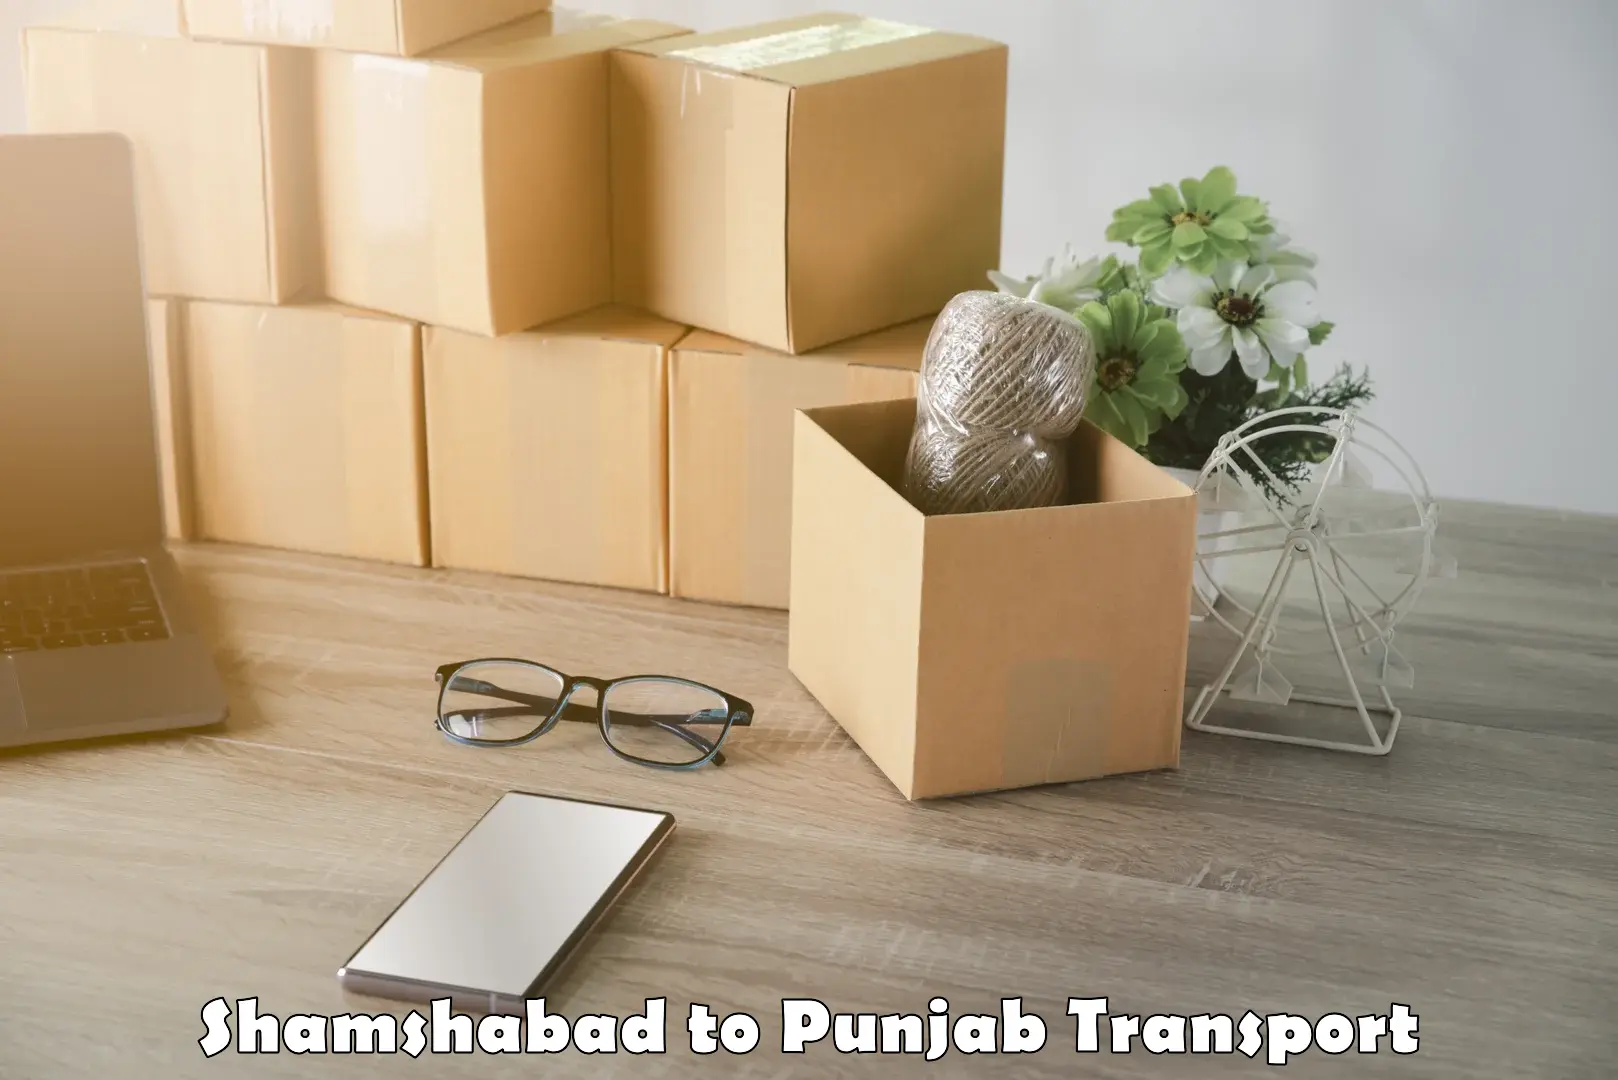 Road transport online services in Shamshabad to Punjab